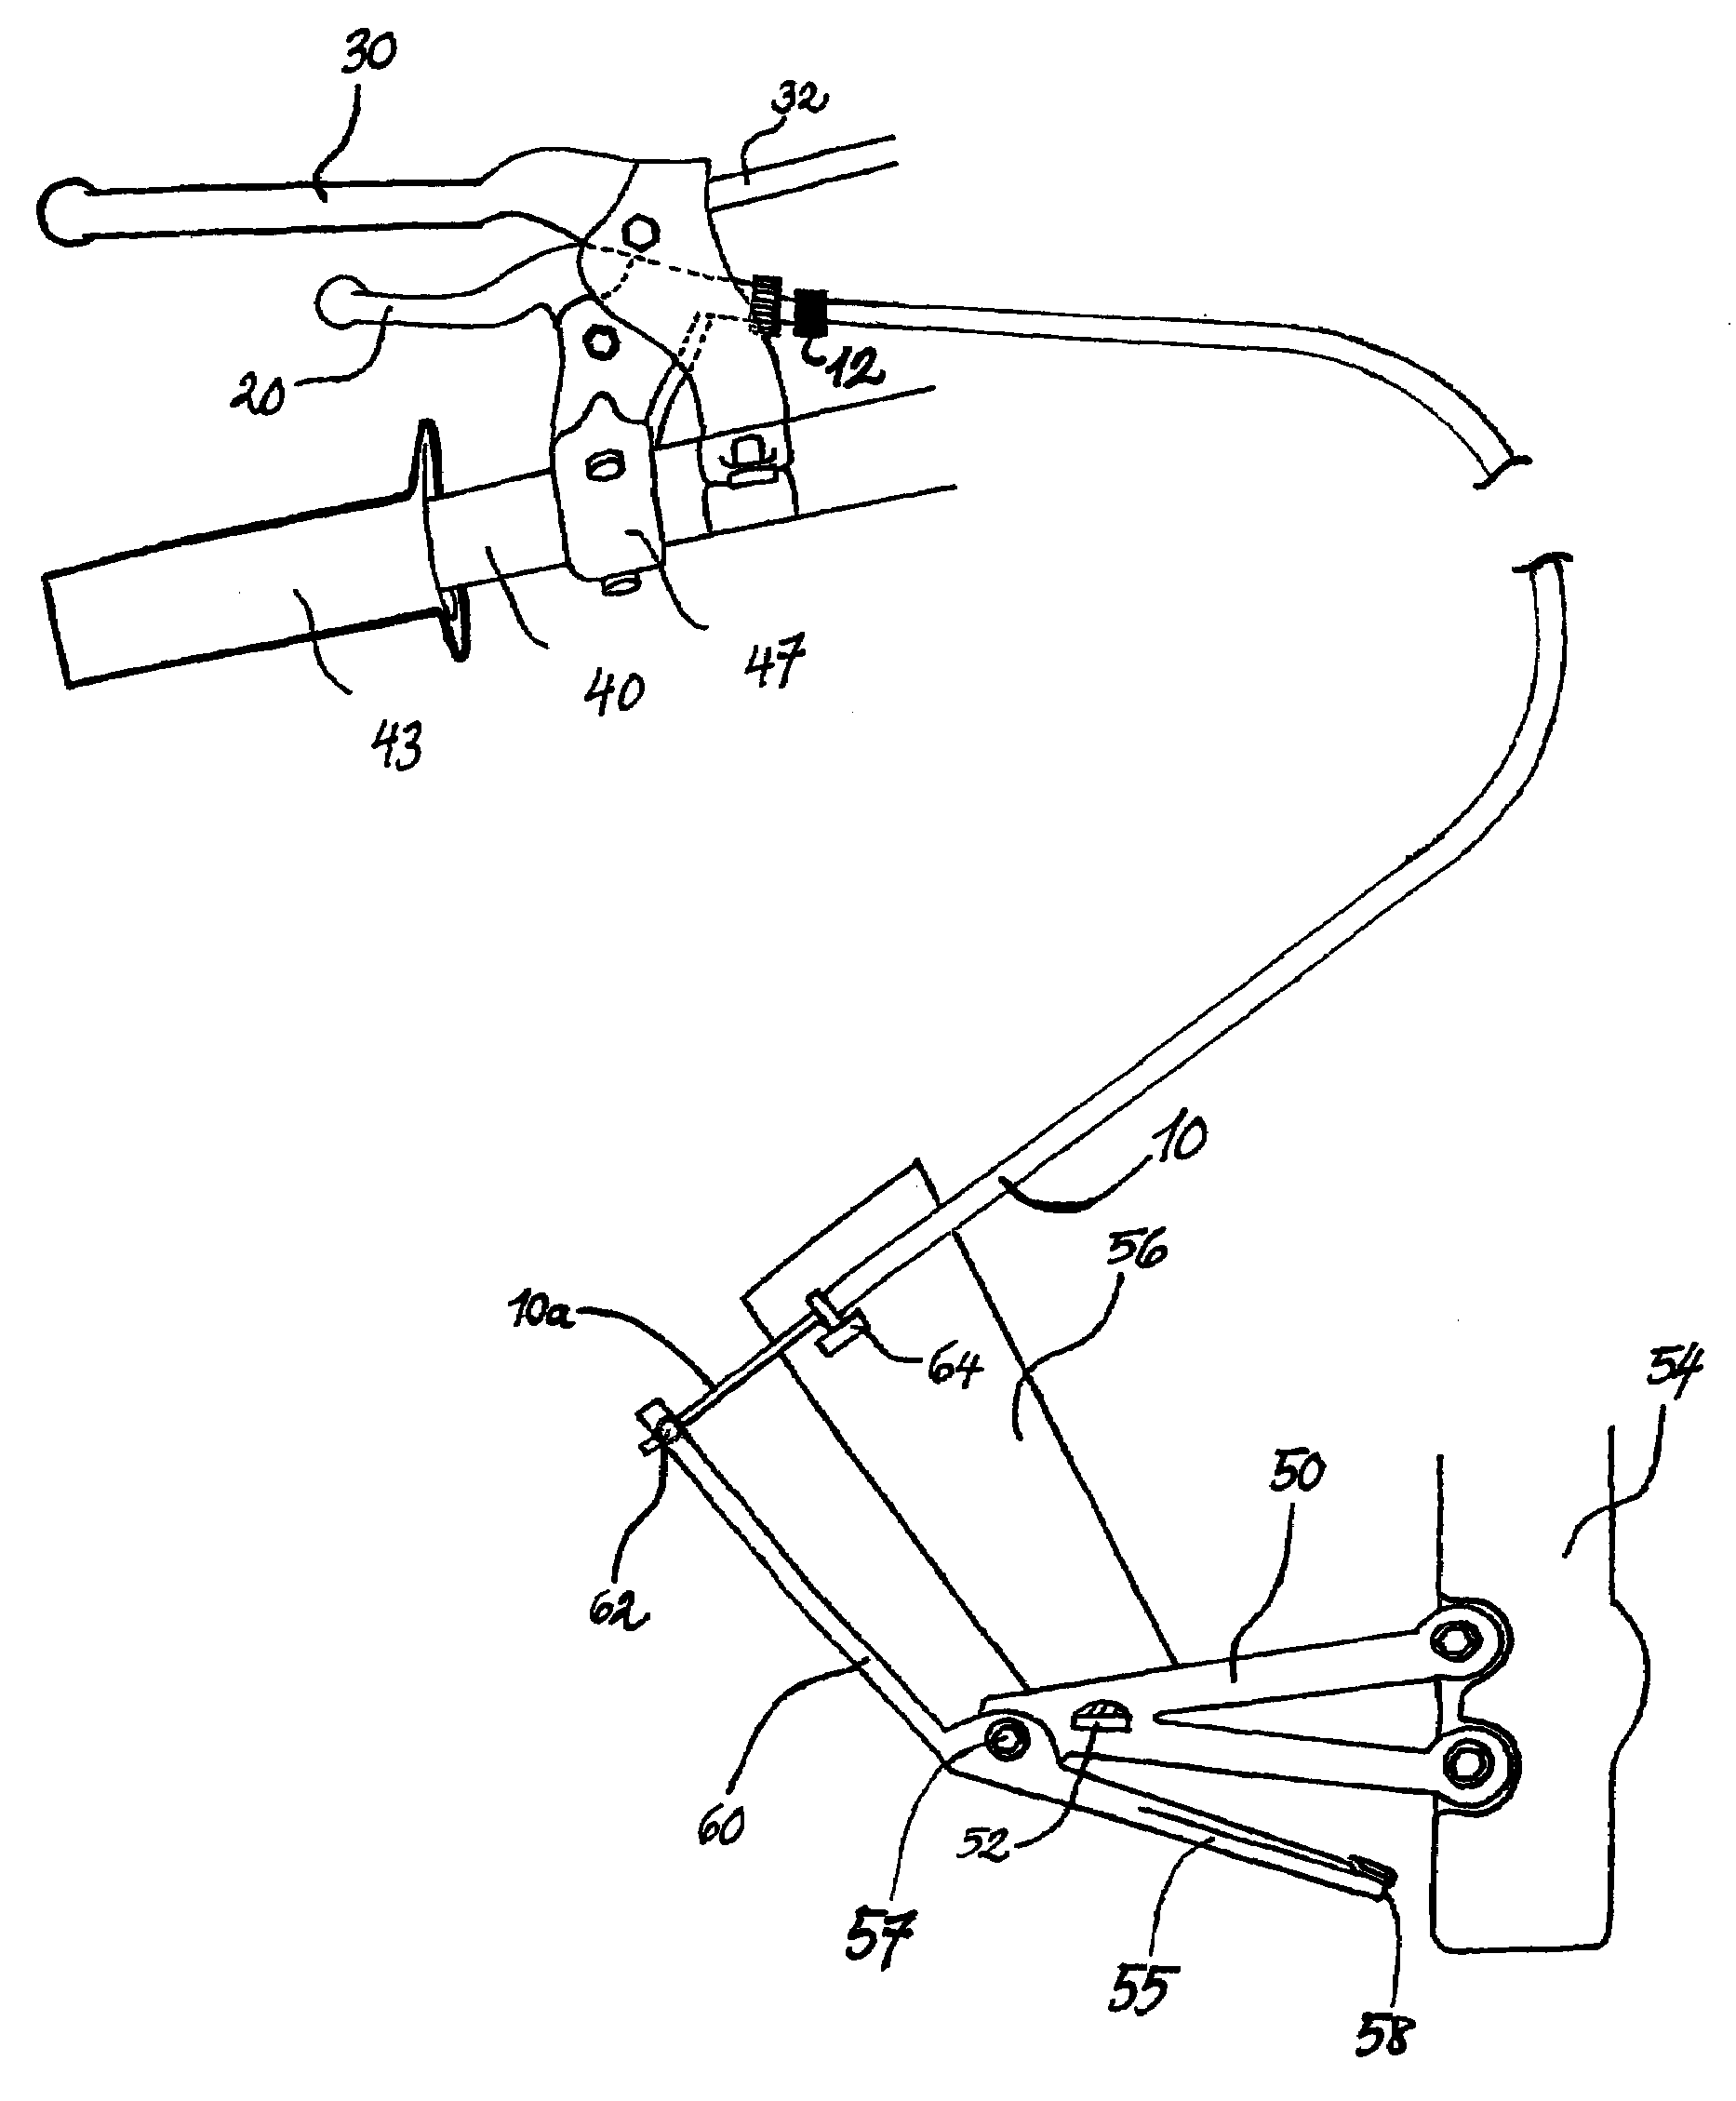 Motorcycle rear-wheel braking system operating mechanism